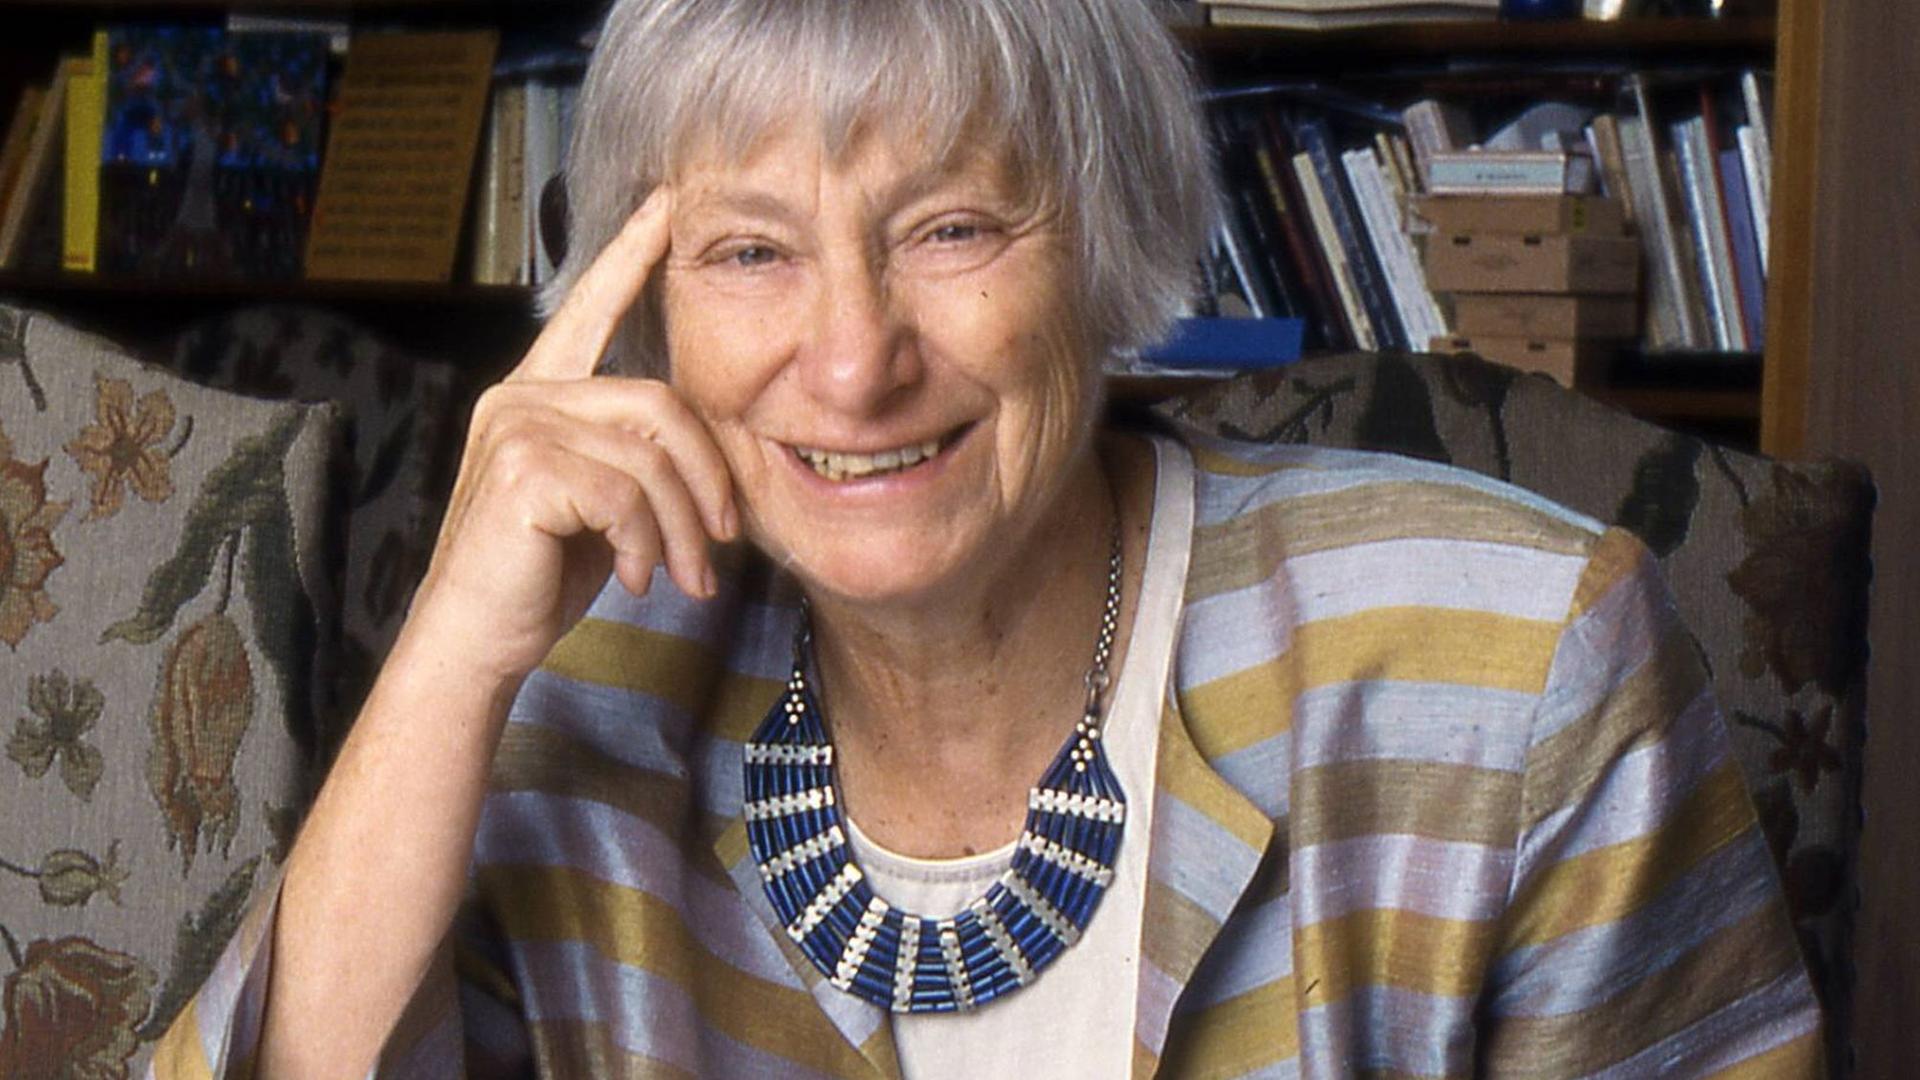 Dorothee Sölle, eine ältere Frau in einer blau-golden gestreiften Jacke, sitzt lächelnd an ihrem Schreibtisch, vor sich verschiedene Schriftstücke ausgebreitet.